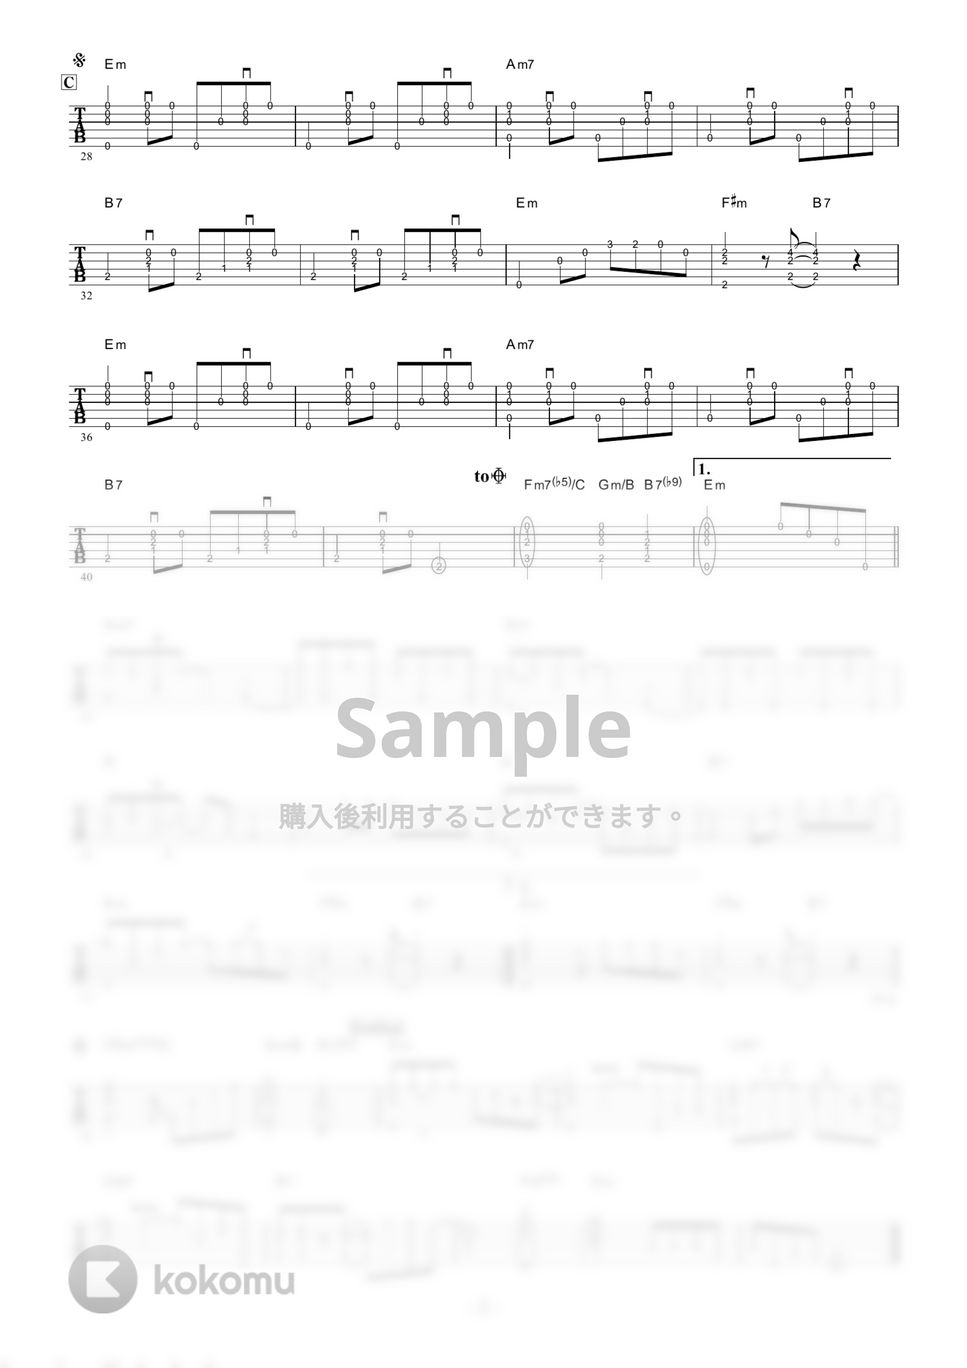 テレサテン - 愛人 (ギター伴奏/イントロ・間奏ソロギター) by 伴奏屋TAB譜